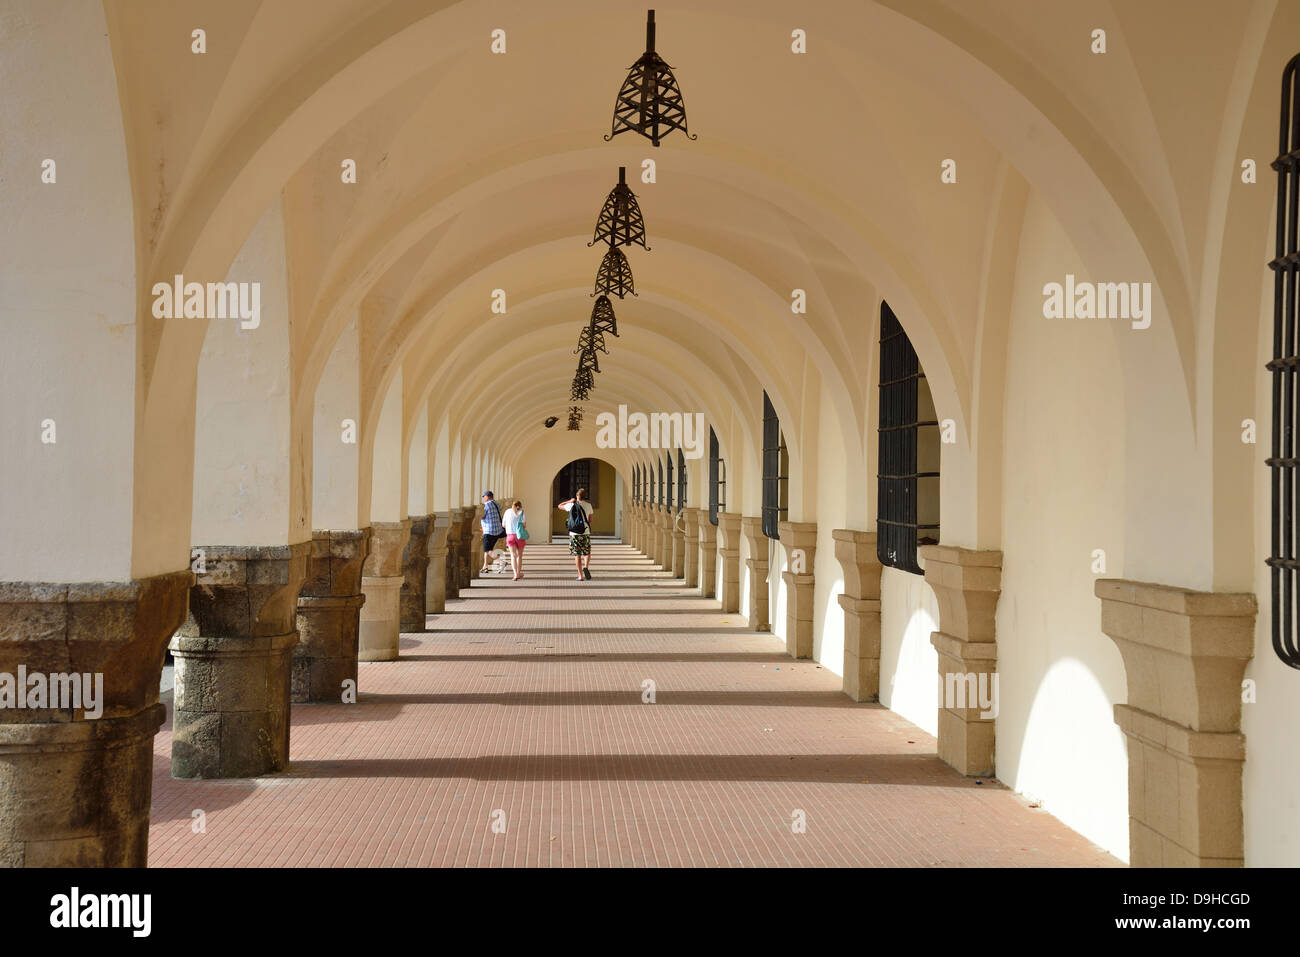 Columnata de arcos de estilo veneciano, Palacio de los Gobernadores, de la ciudad de Rodas Rodas (Rodas), Dodecaneso, región sur del Egeo, Grecia Foto de stock